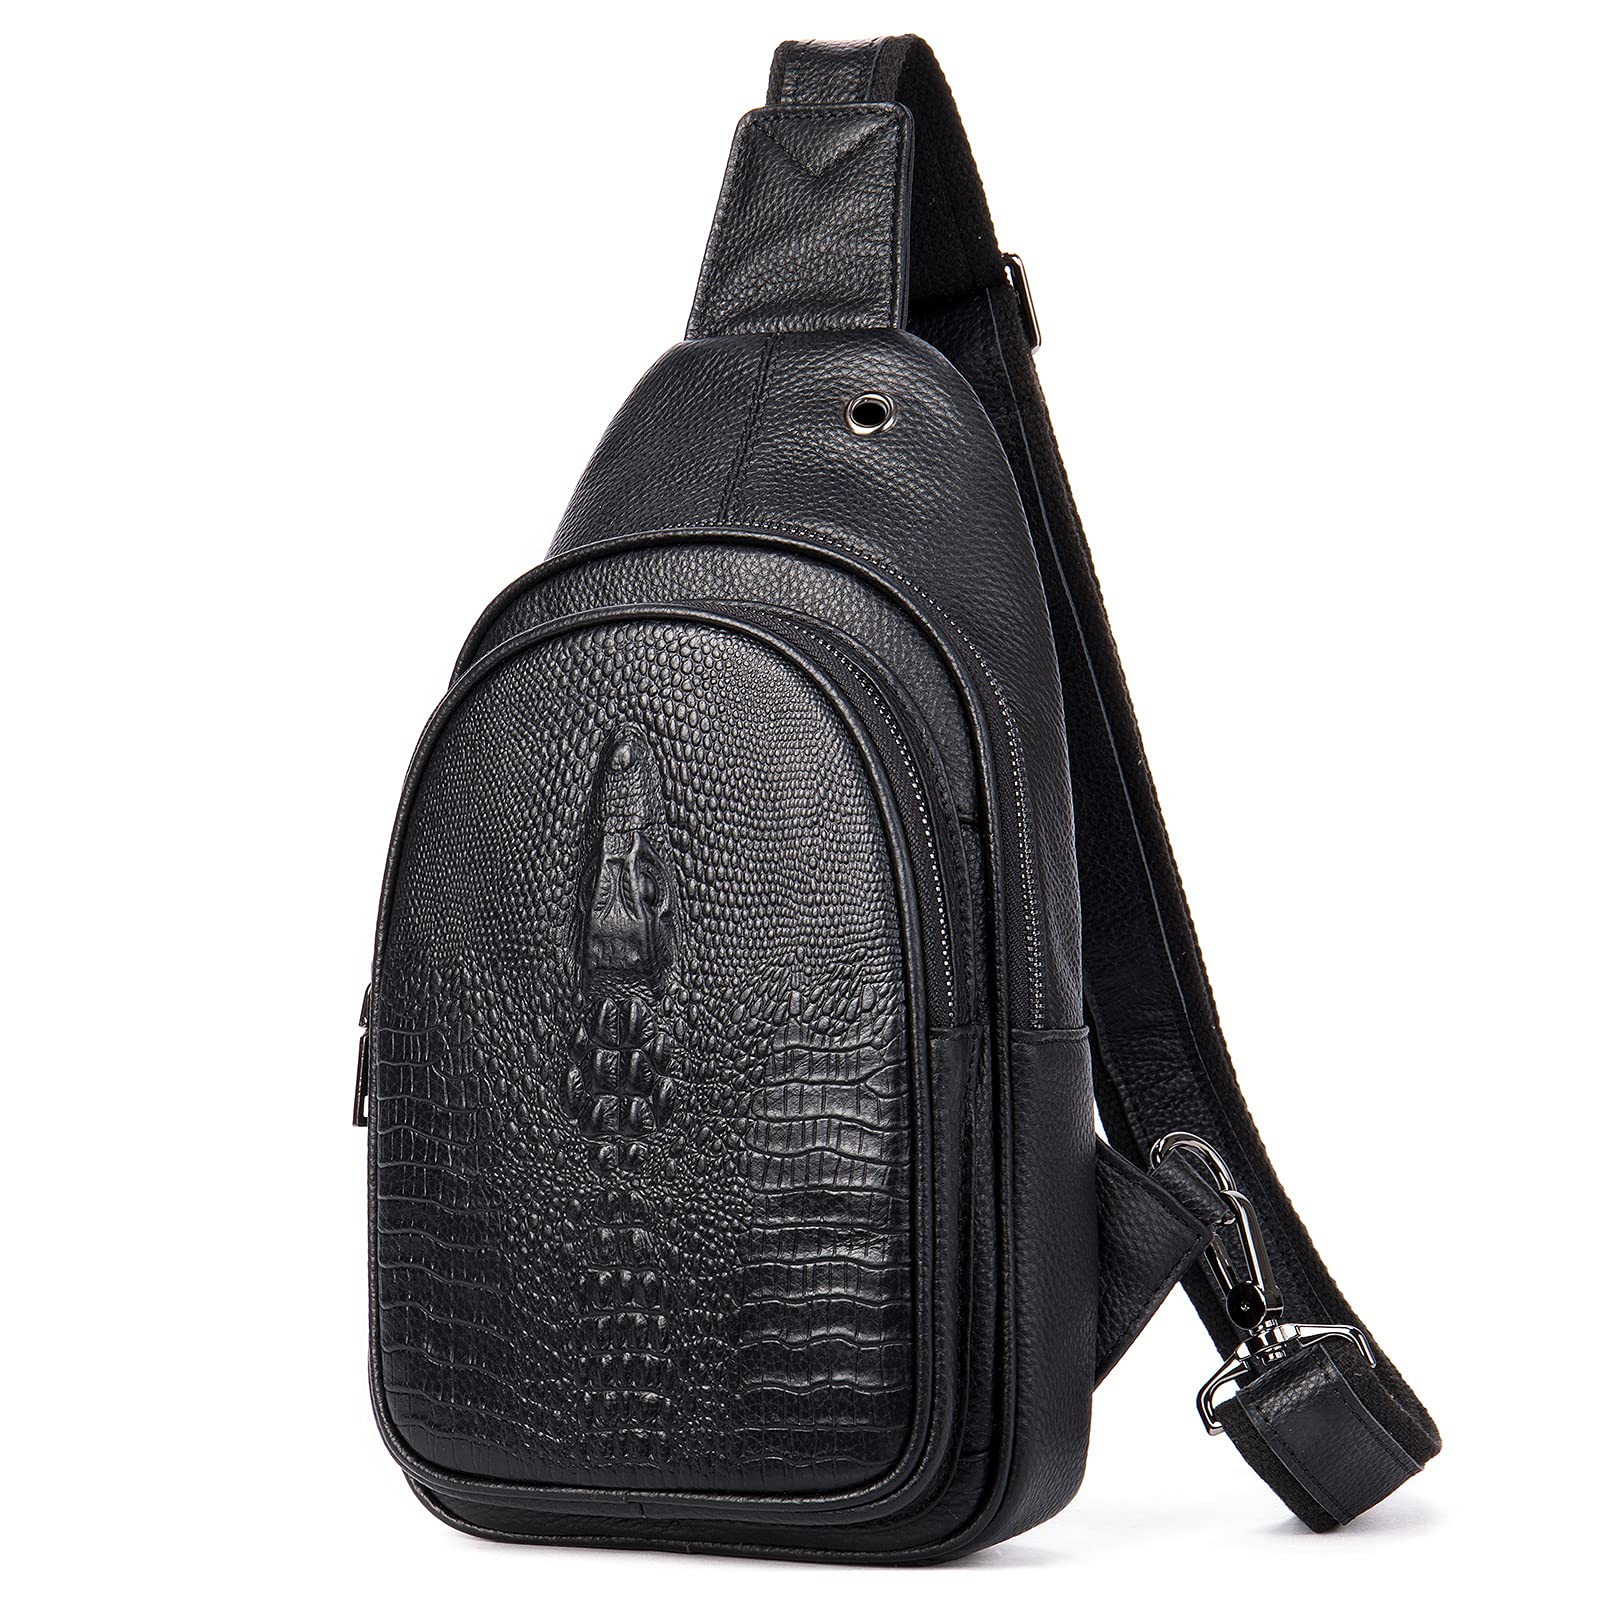 送料無料NIUCUNZH Crocodile Leather Sling Bag with Leather Strap 3 Zipper Crossbody Shoulder Bags for Travel Hike Everyda